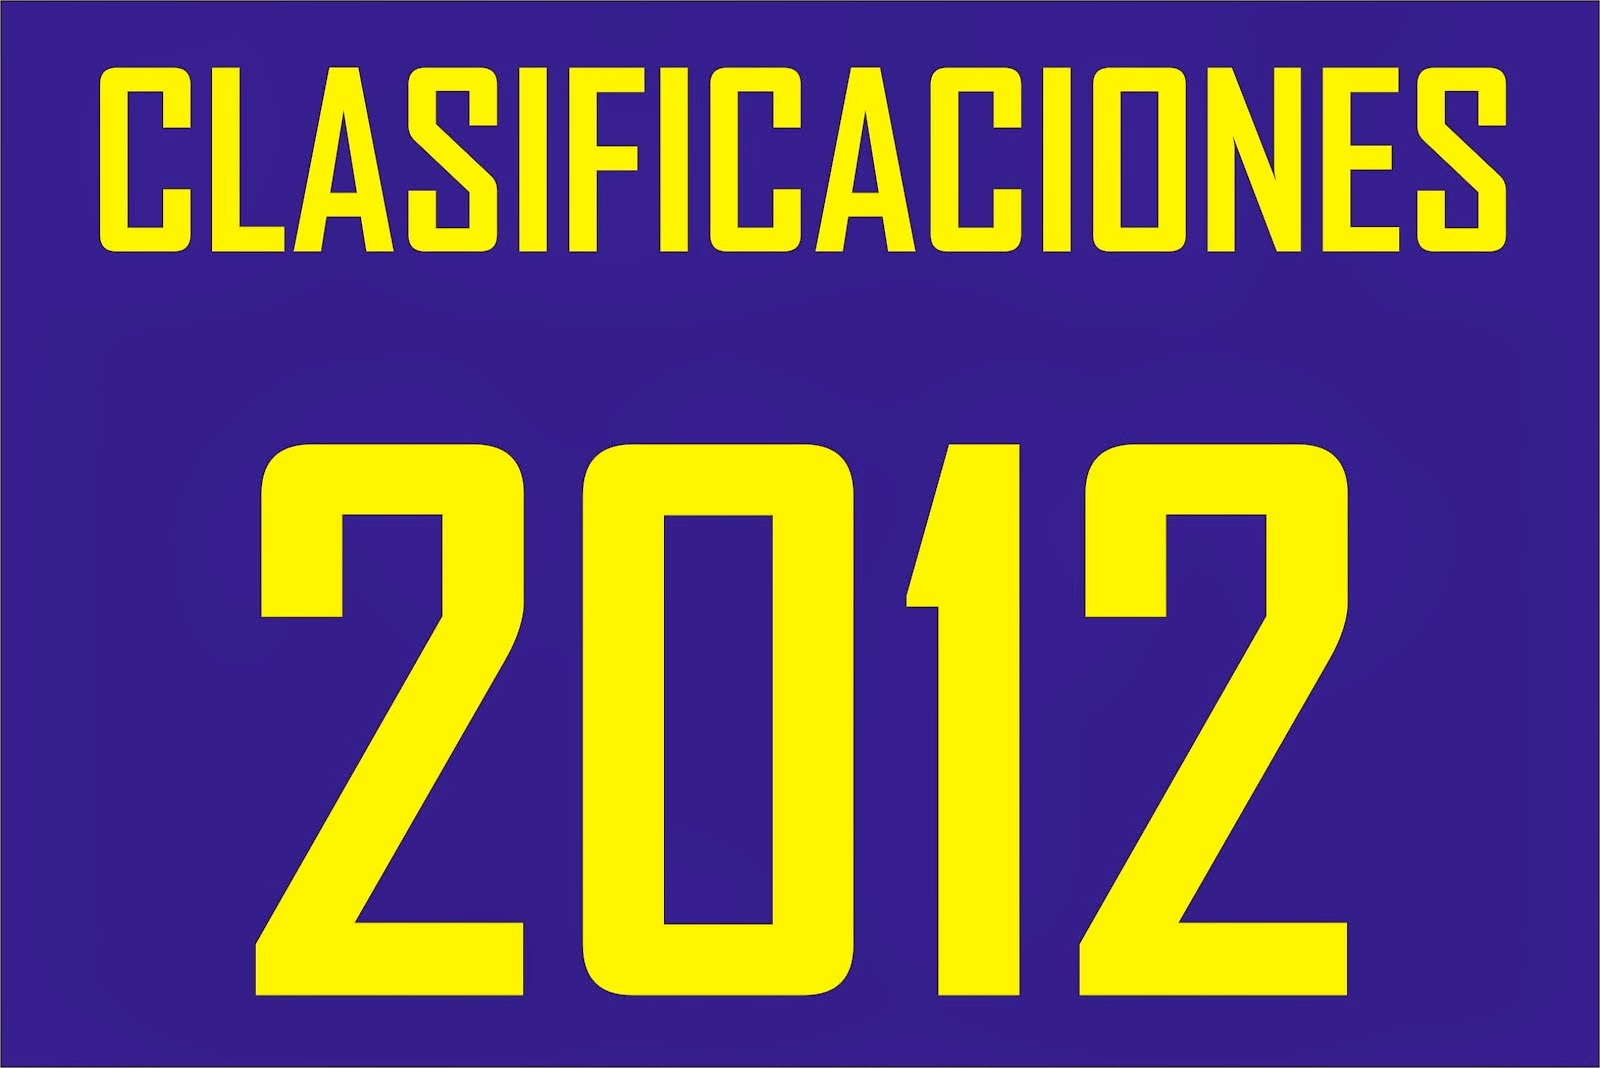 CLASIFICACIONES 2012